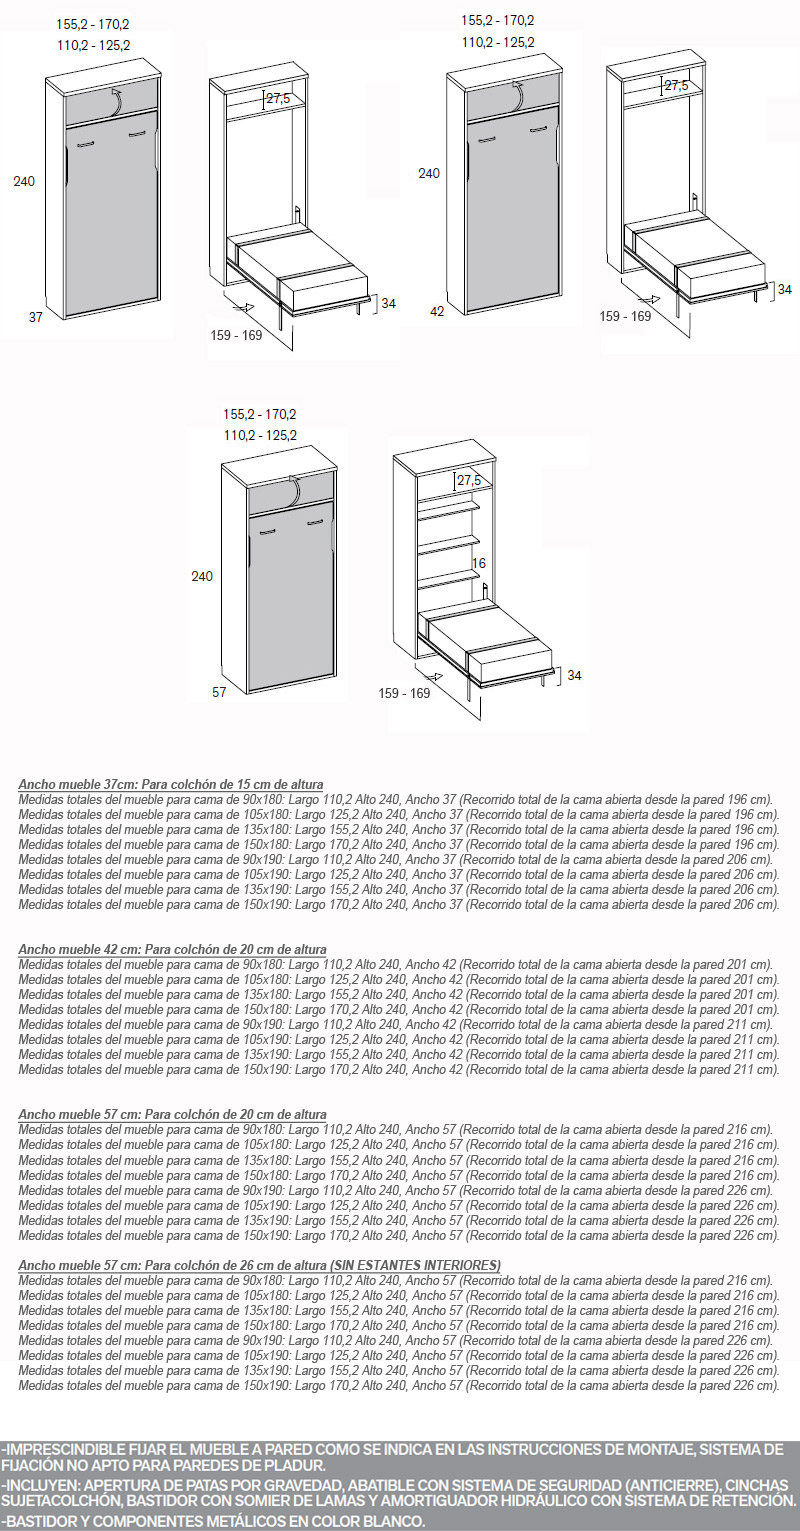 Cama abatible vertical escritorio y altillo - Artikalia